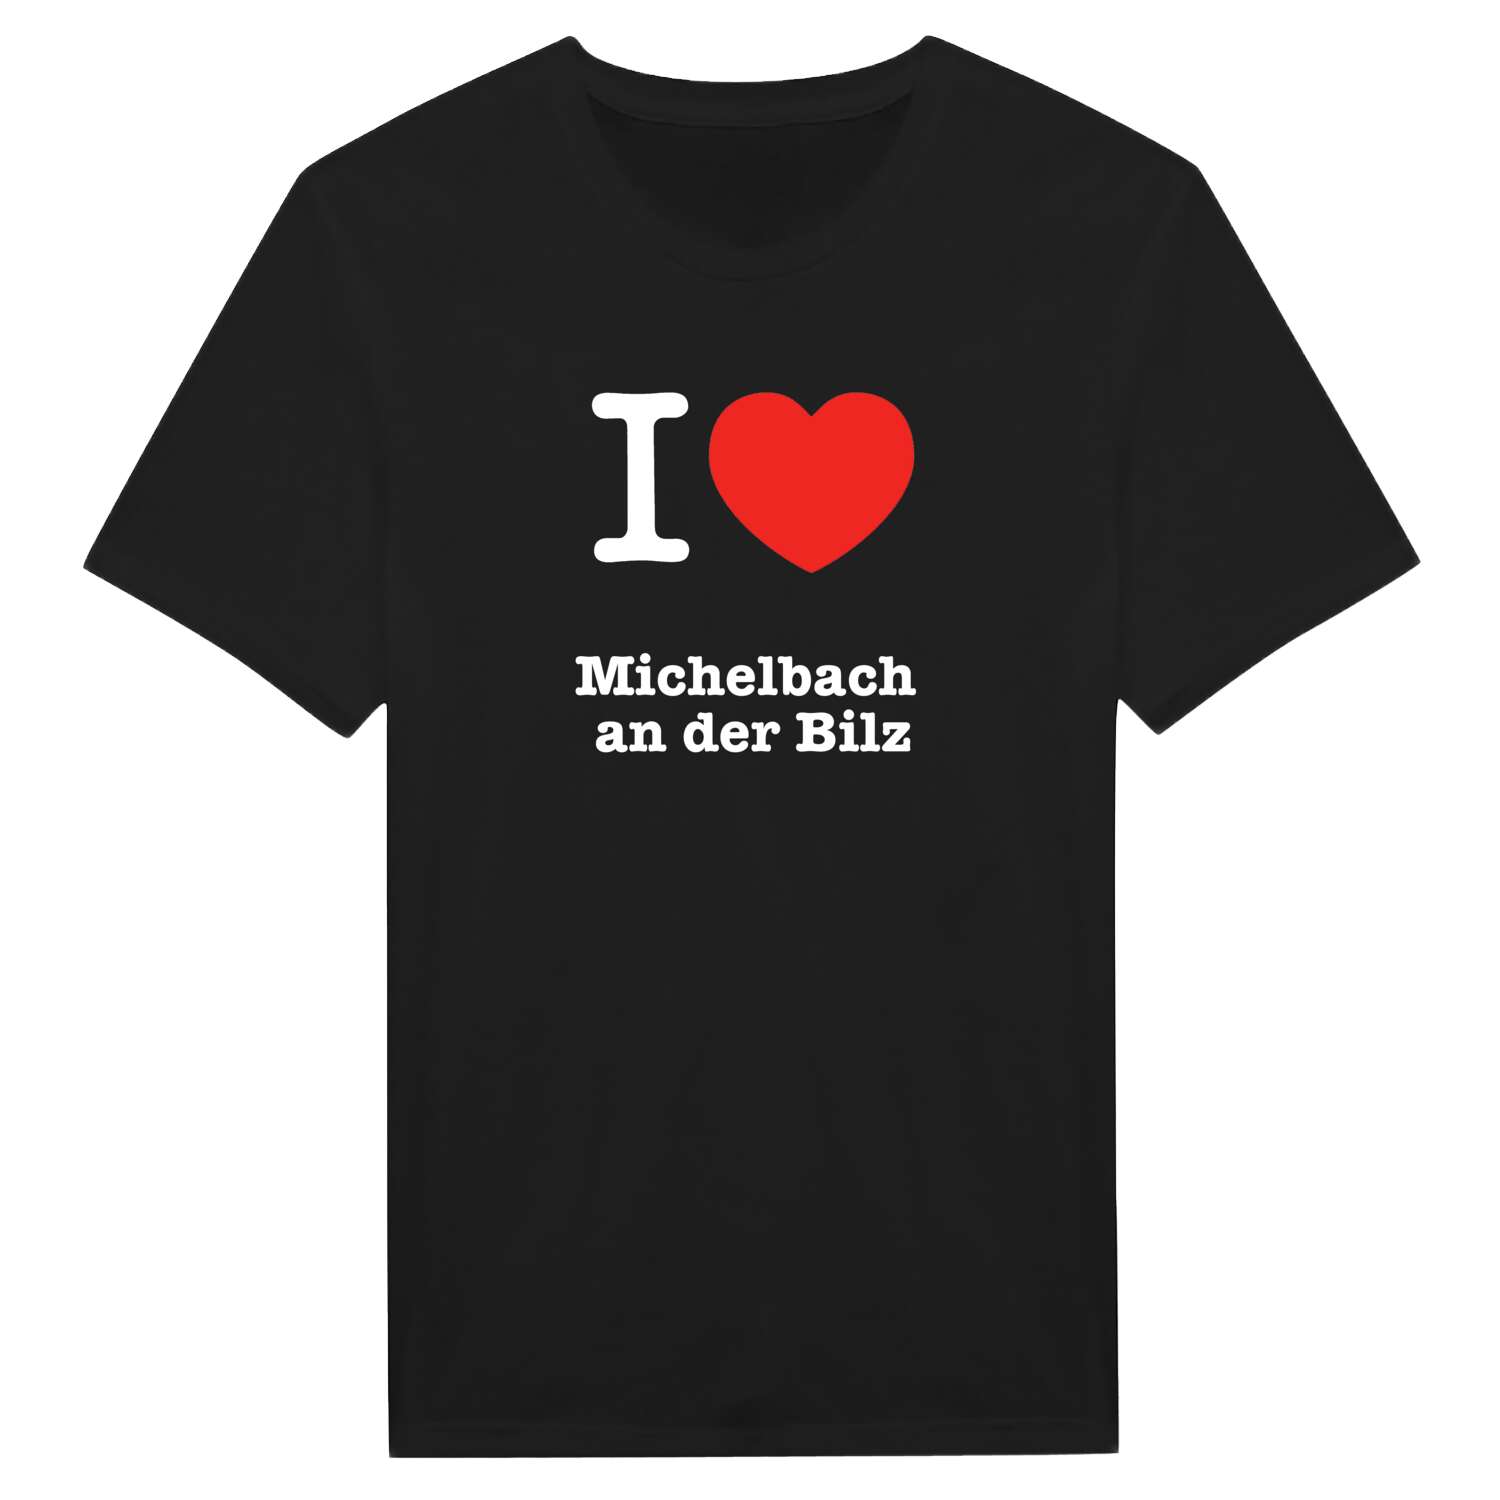 Michelbach an der Bilz T-Shirt »I love«